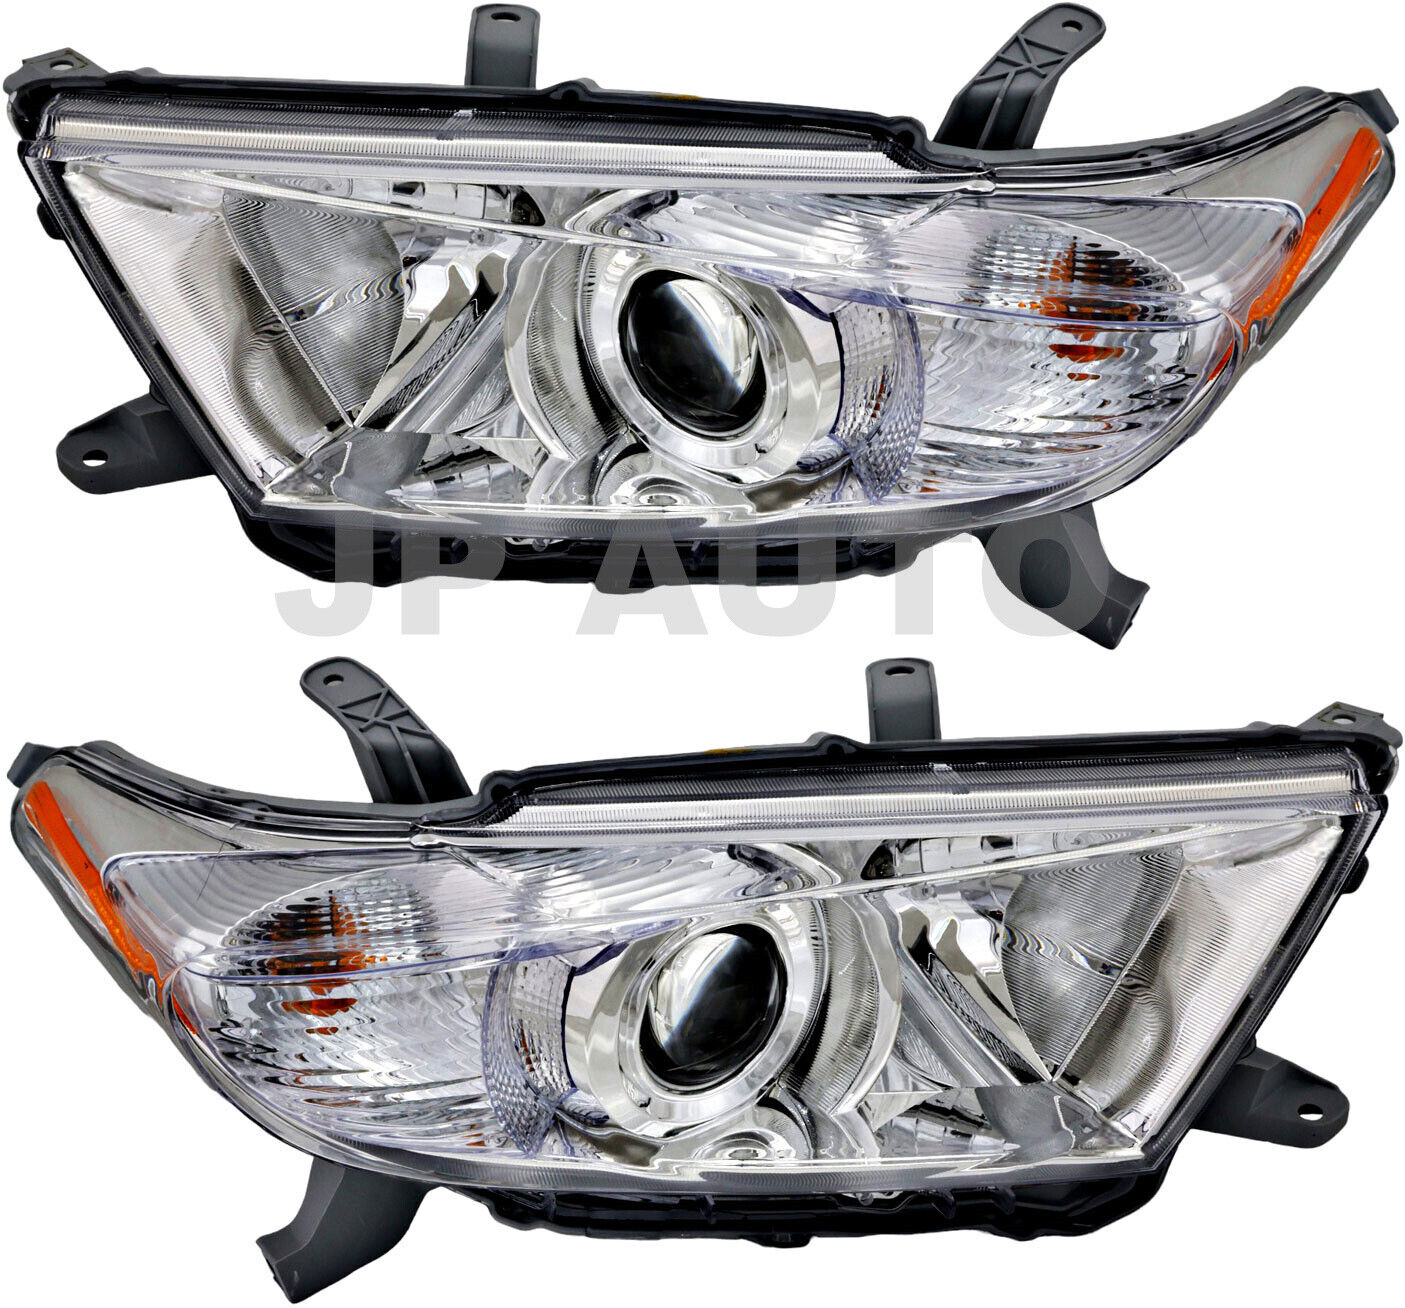 For 2011-2013 Toyota Highlander Headlight Halogen Set Driver and Passenger Side